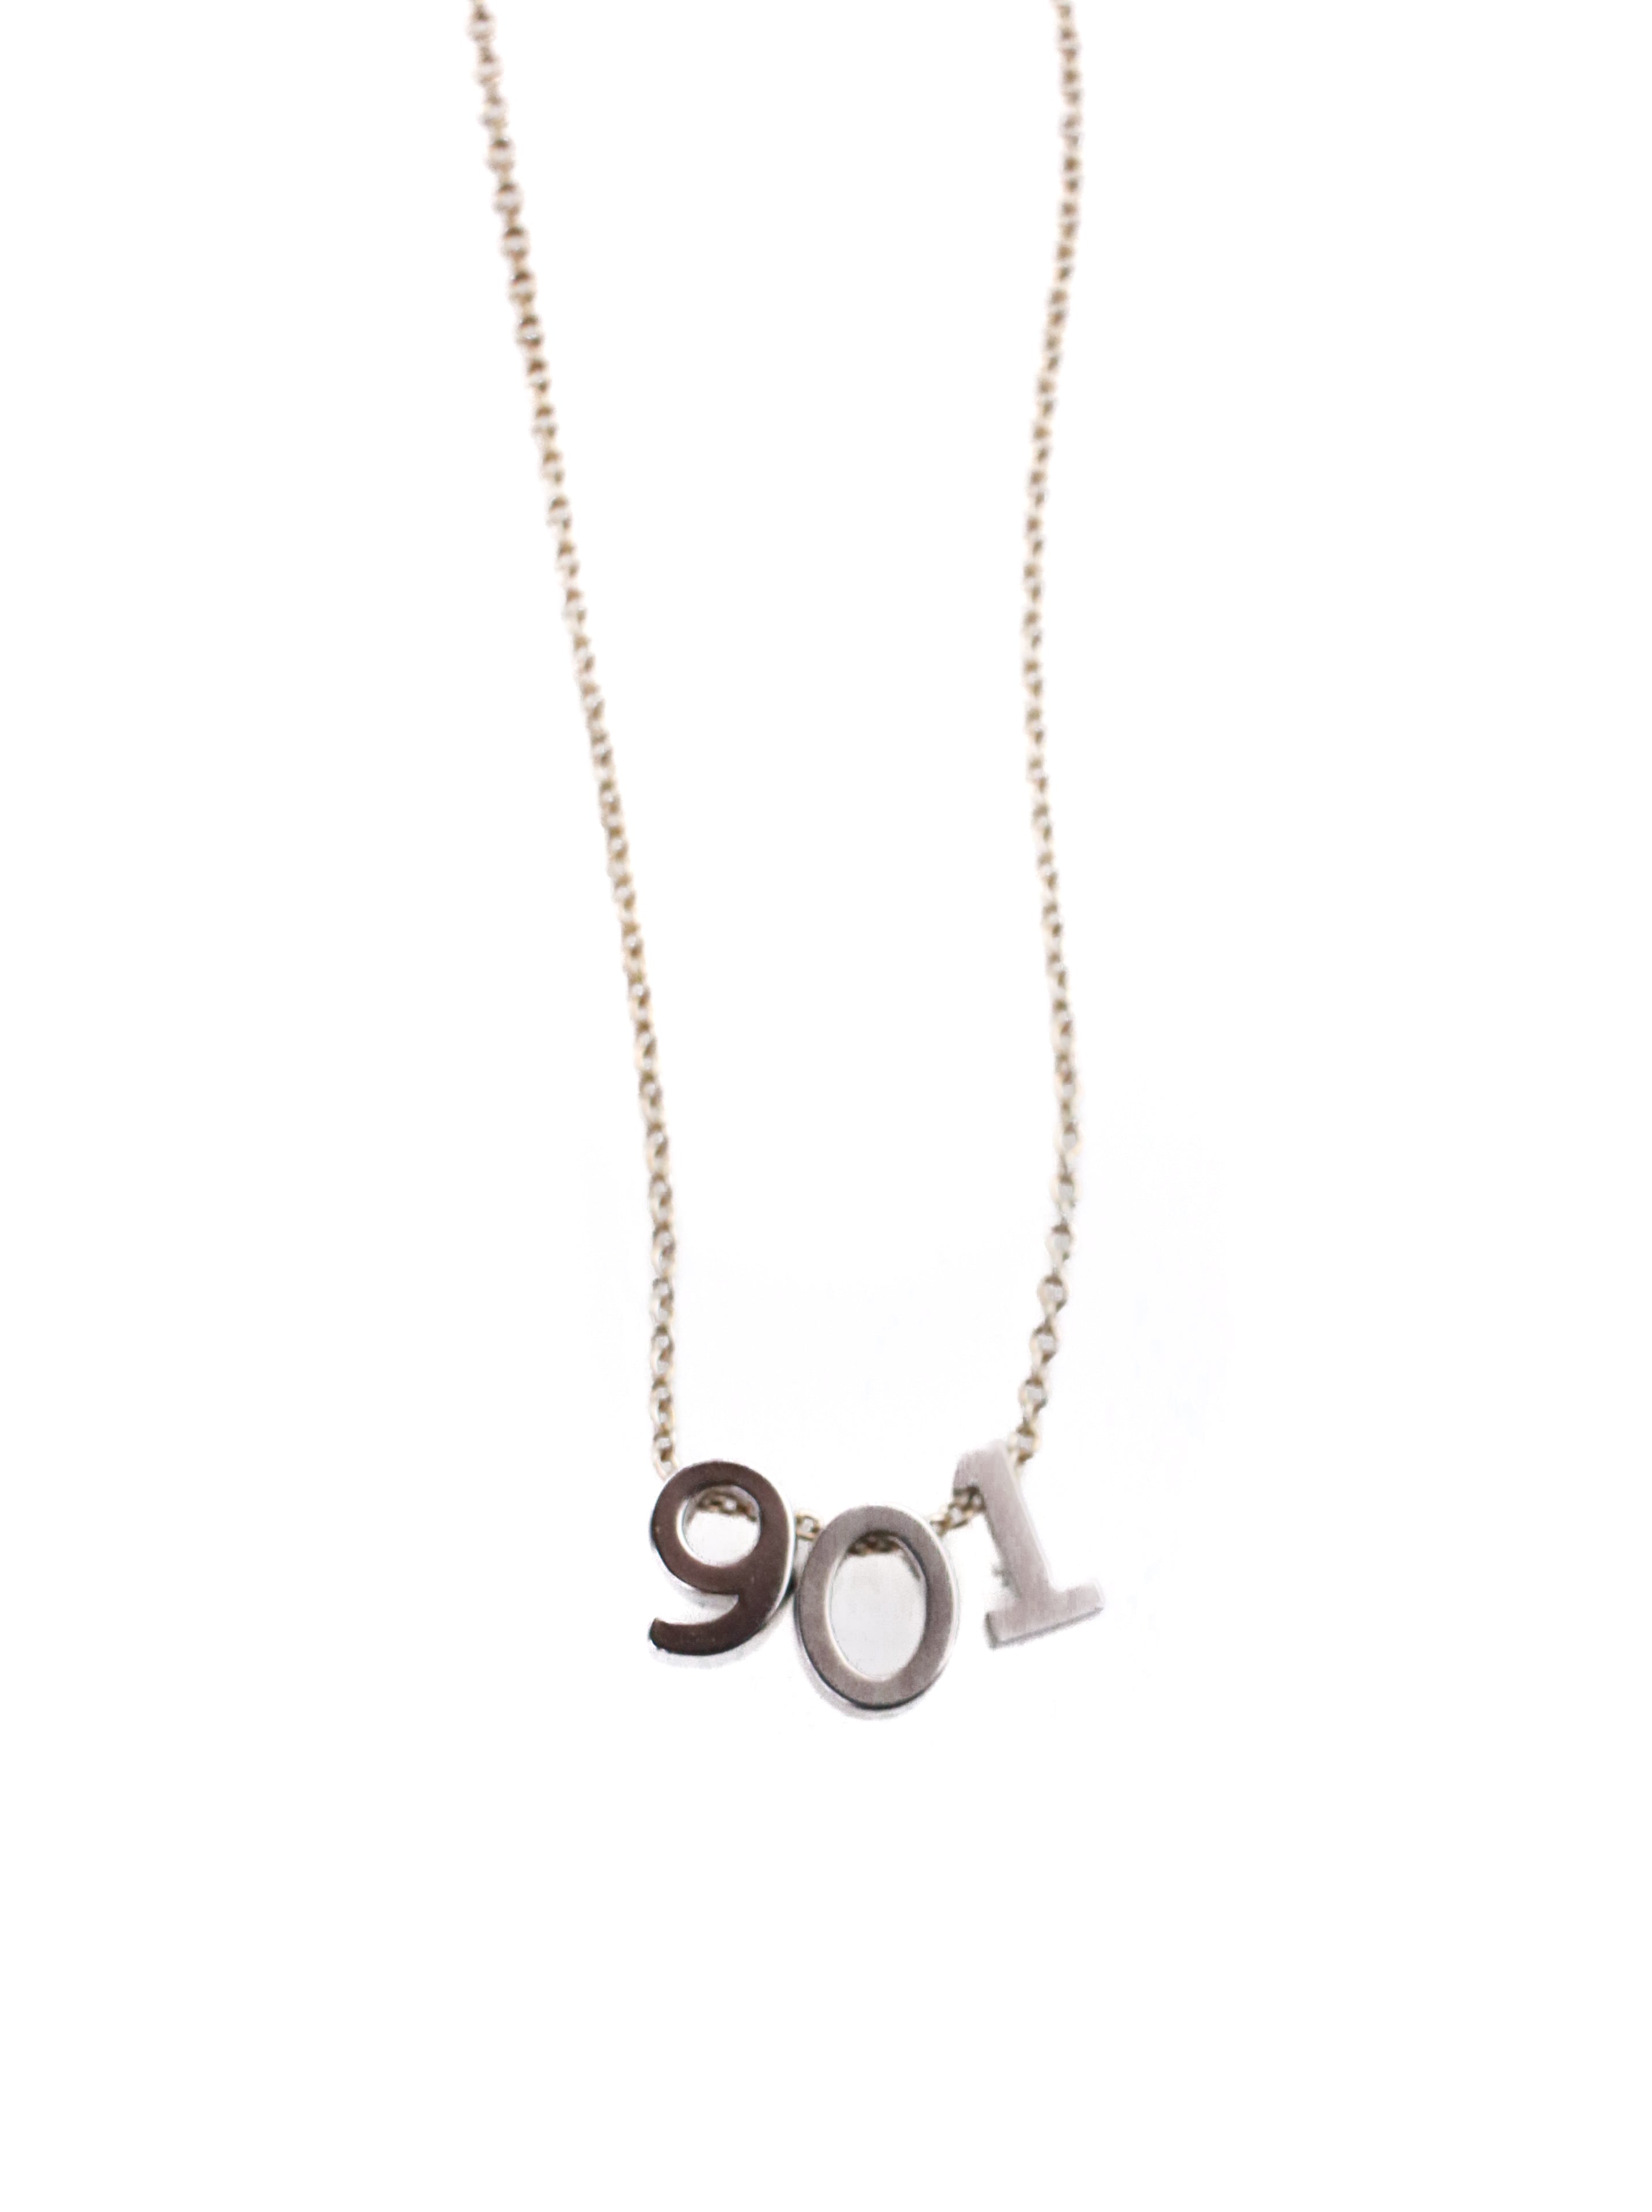 901 Saba Necklace | Adorn 512